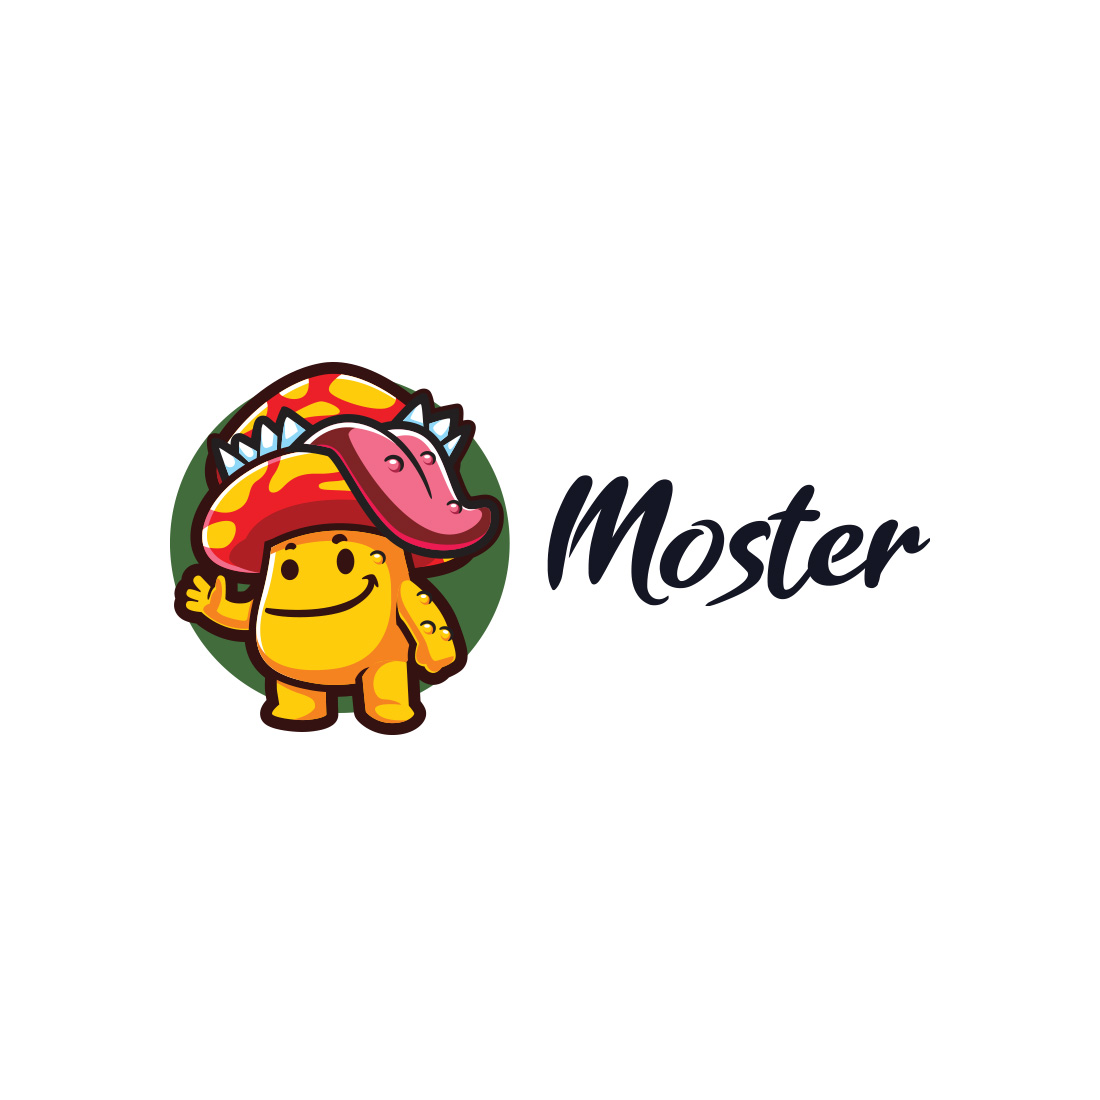 Mushroom Monster Character Mascot Logo cover image.